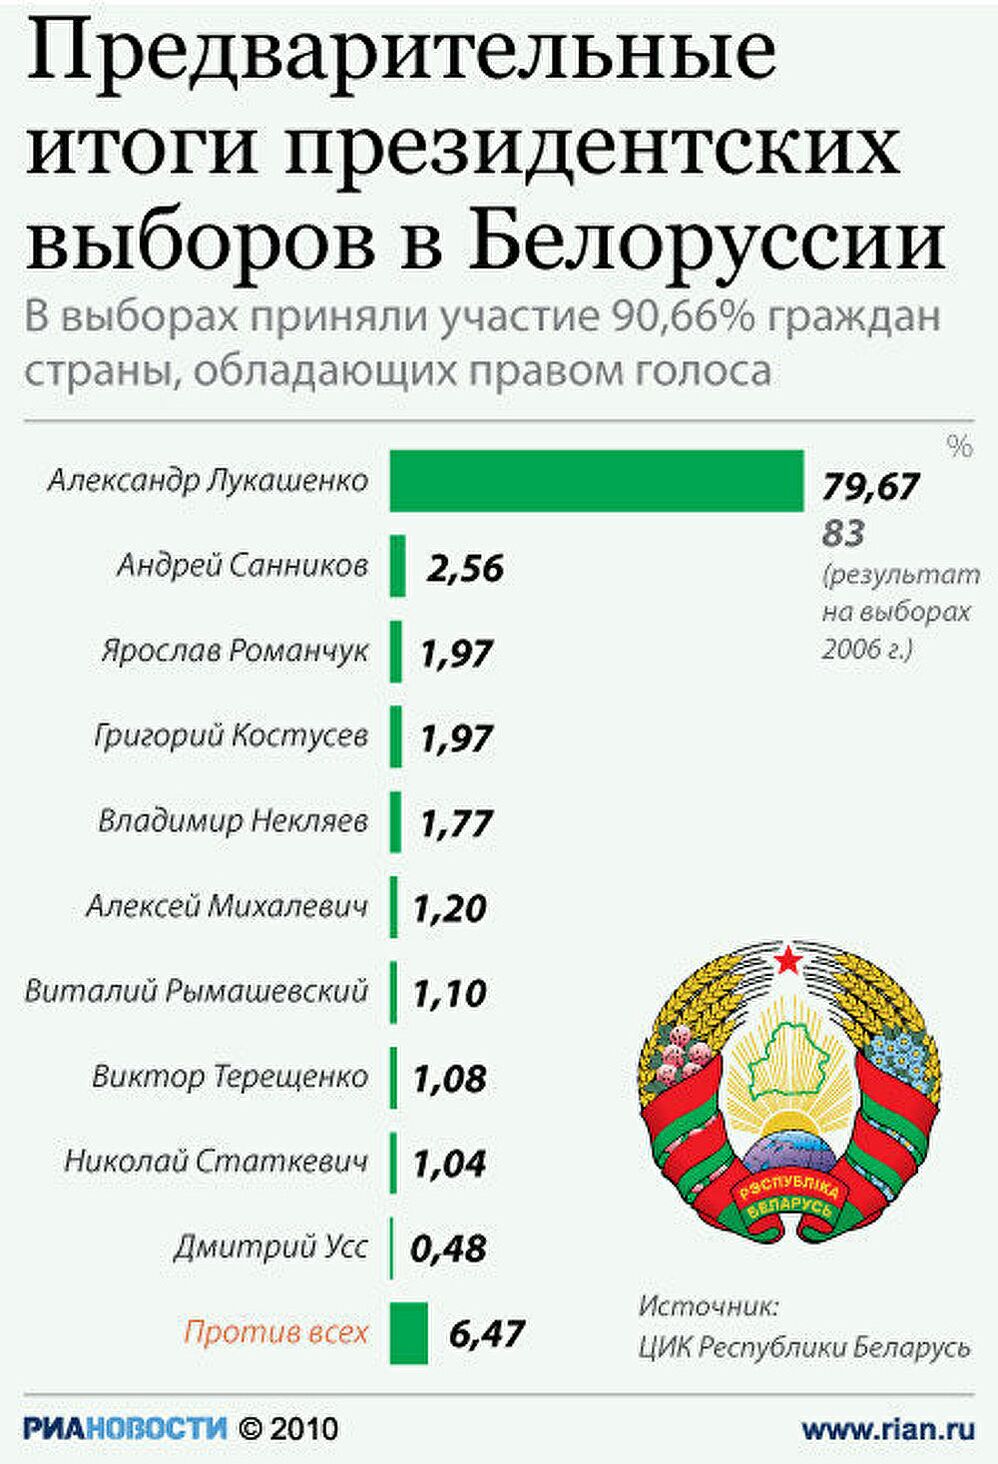 Итоги президентских выборов в Белоруссии